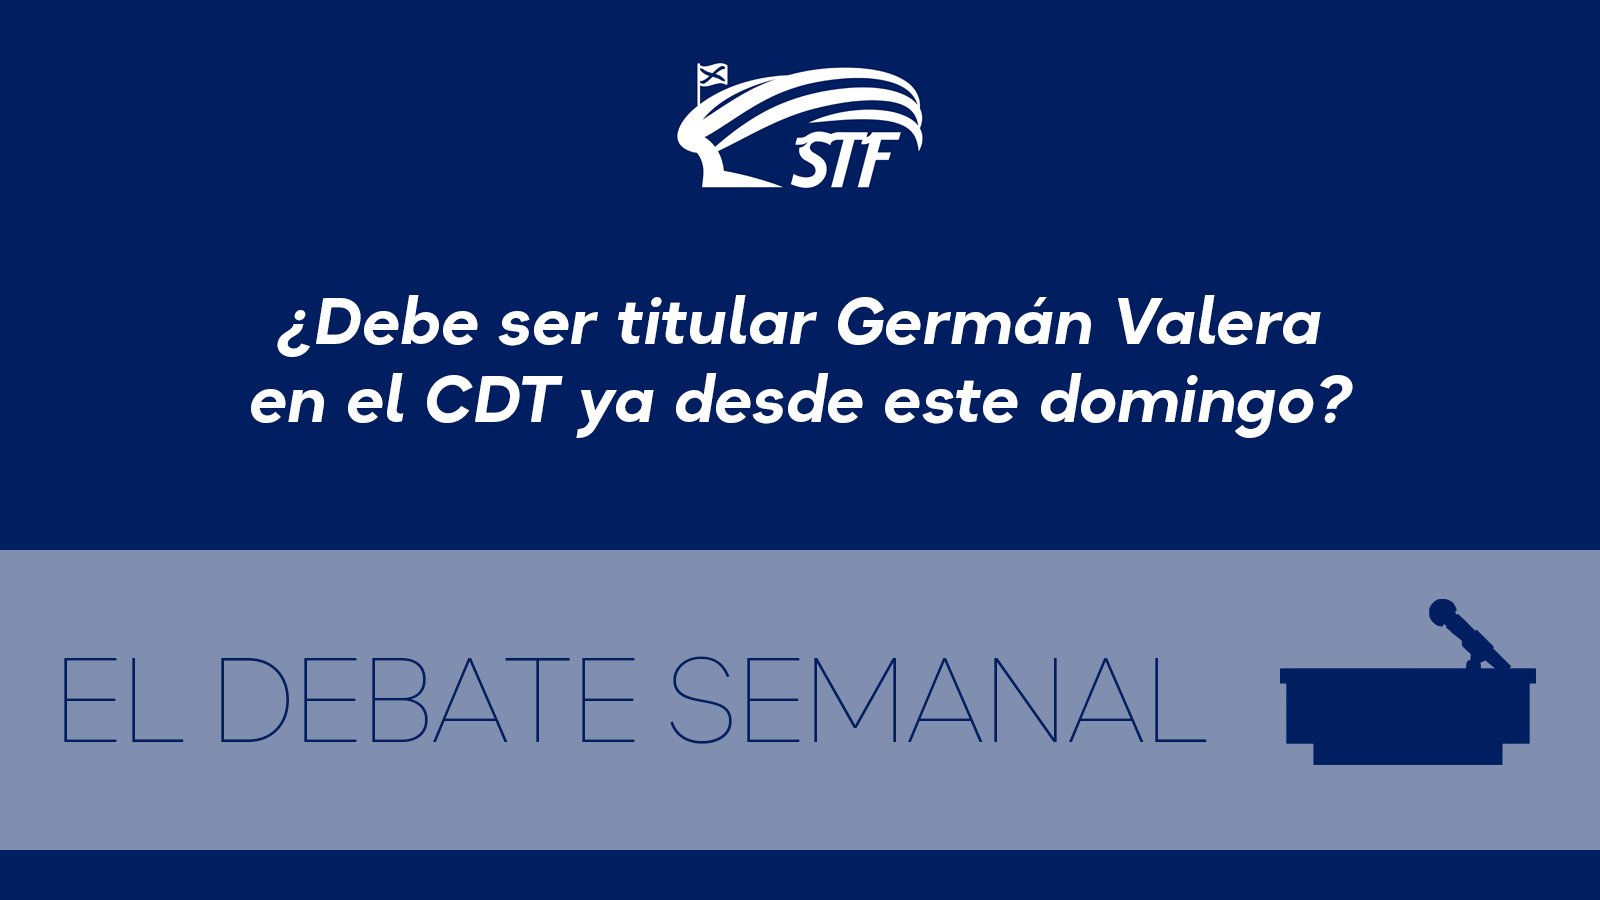 El Debate Semanal: ¿Debe ser titular Germán Valera en el CDT ya desde este domingo? El 58'3 por ciento dice no